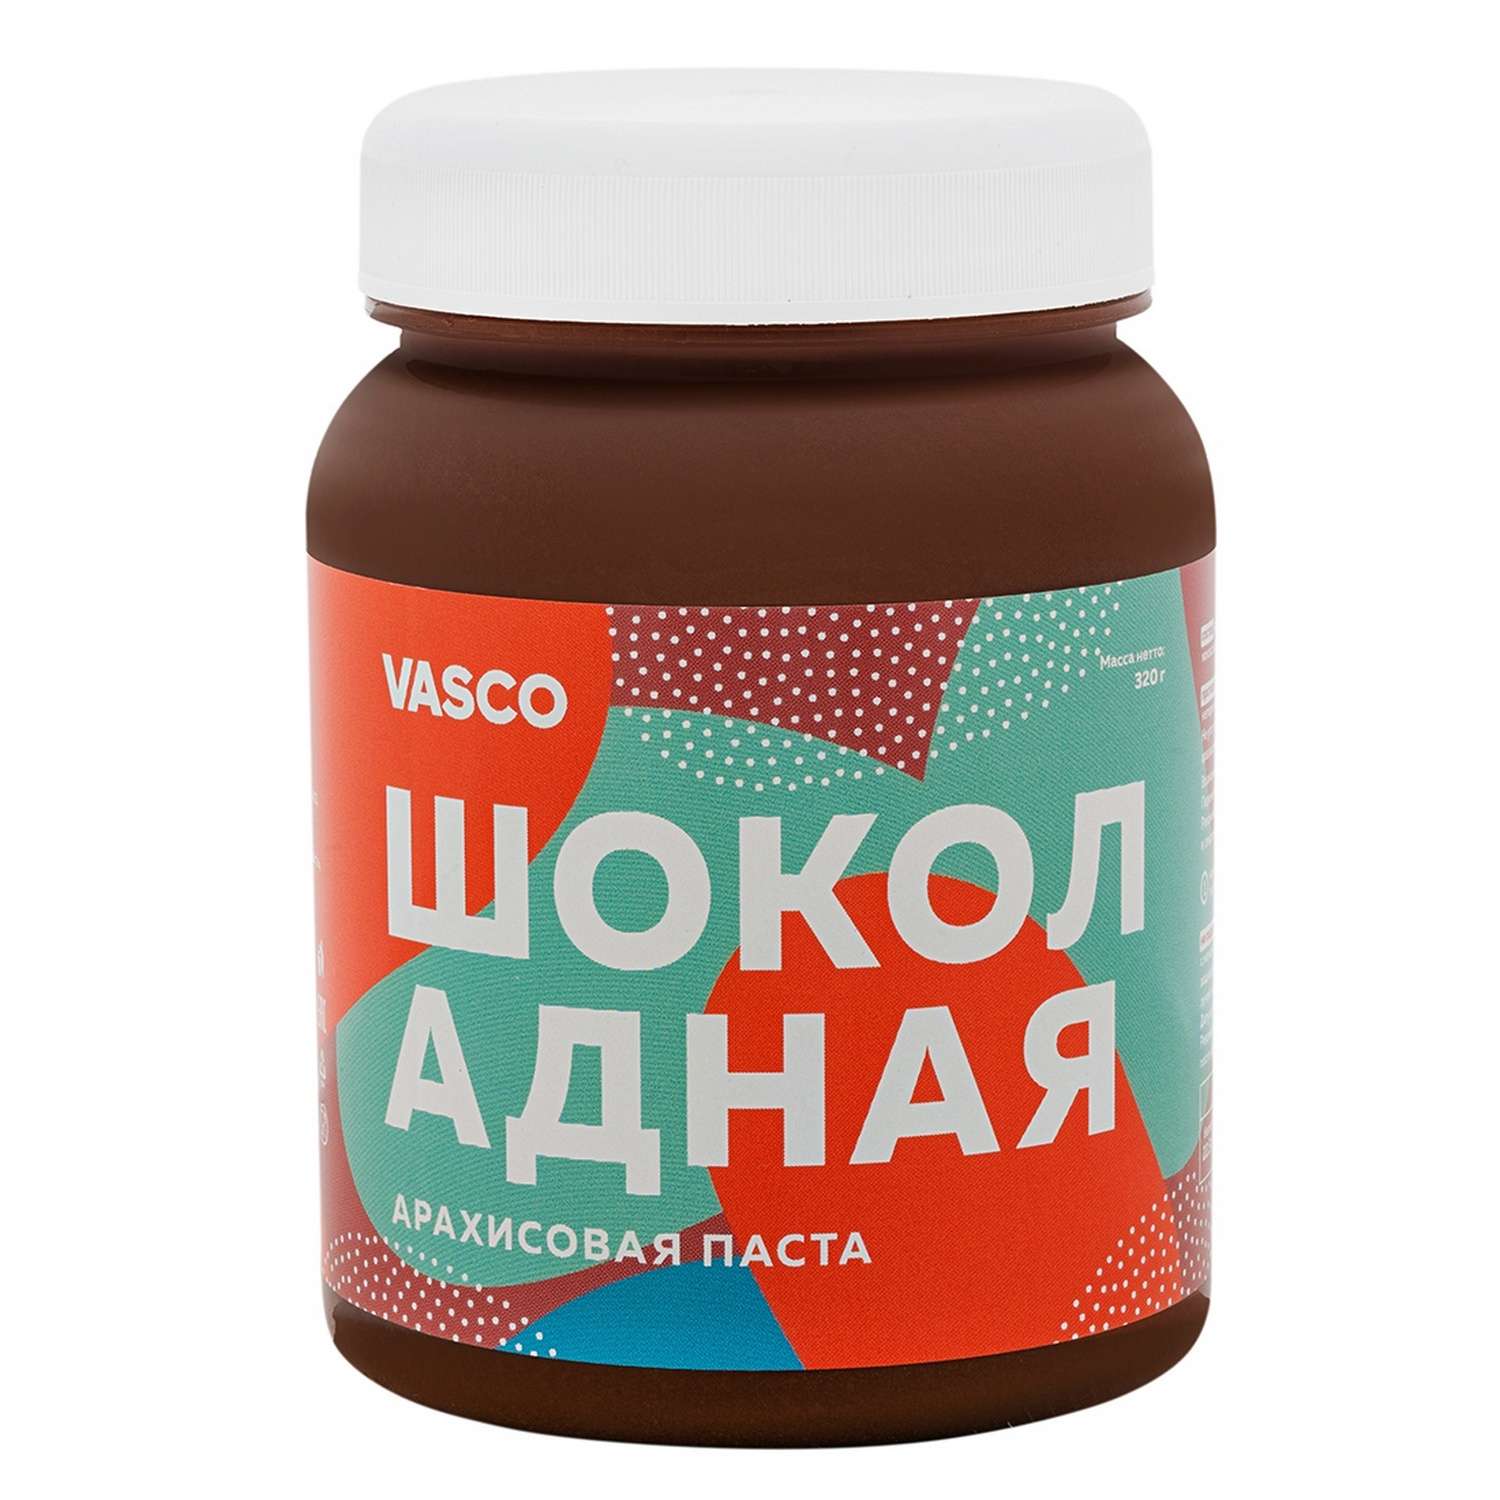 Паста Vasco арахисовая шоколадная 320г - фото 1